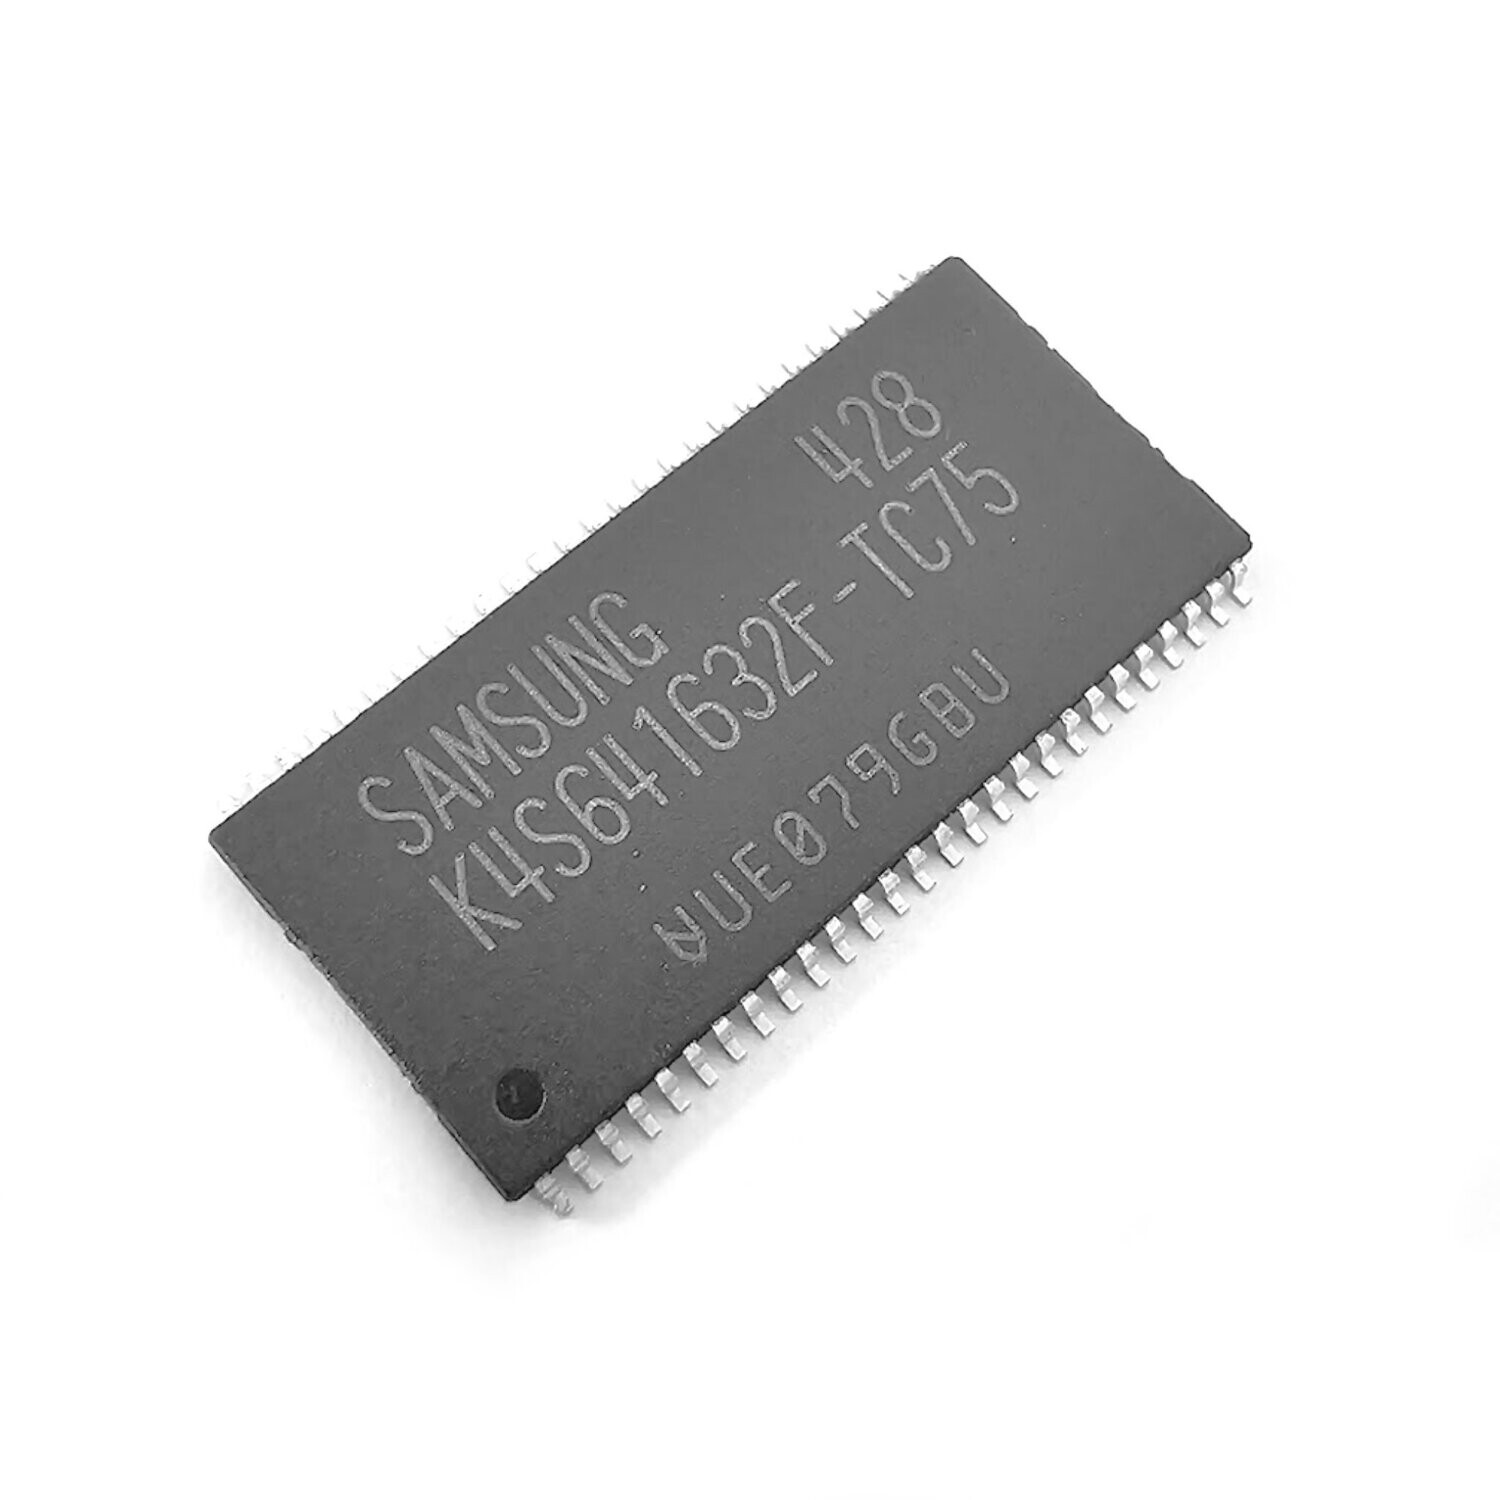 64Mbit Synchronous DRAM (K4S641632F)